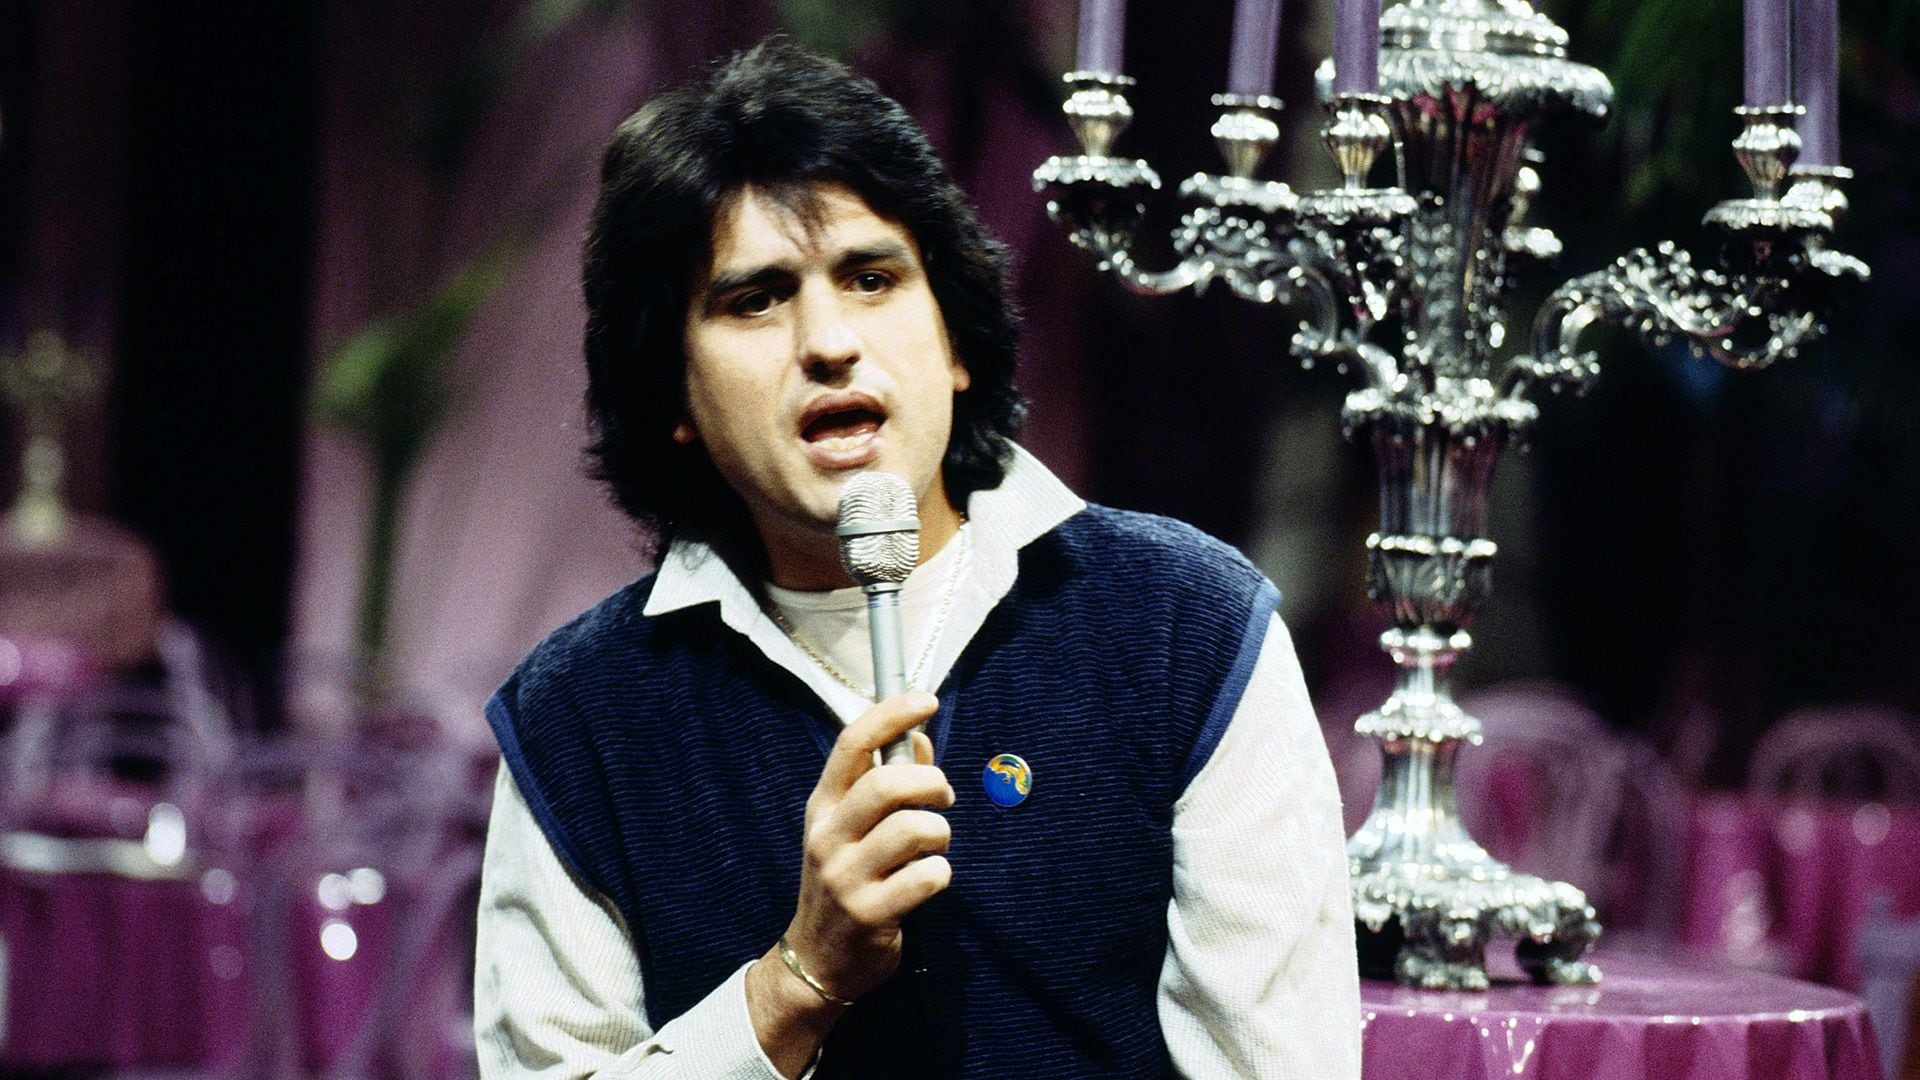 Toto Cutugno durante el show alemán 'Buona Sera, Italia', en 1984. (kpa/United Archives via Getty Images)